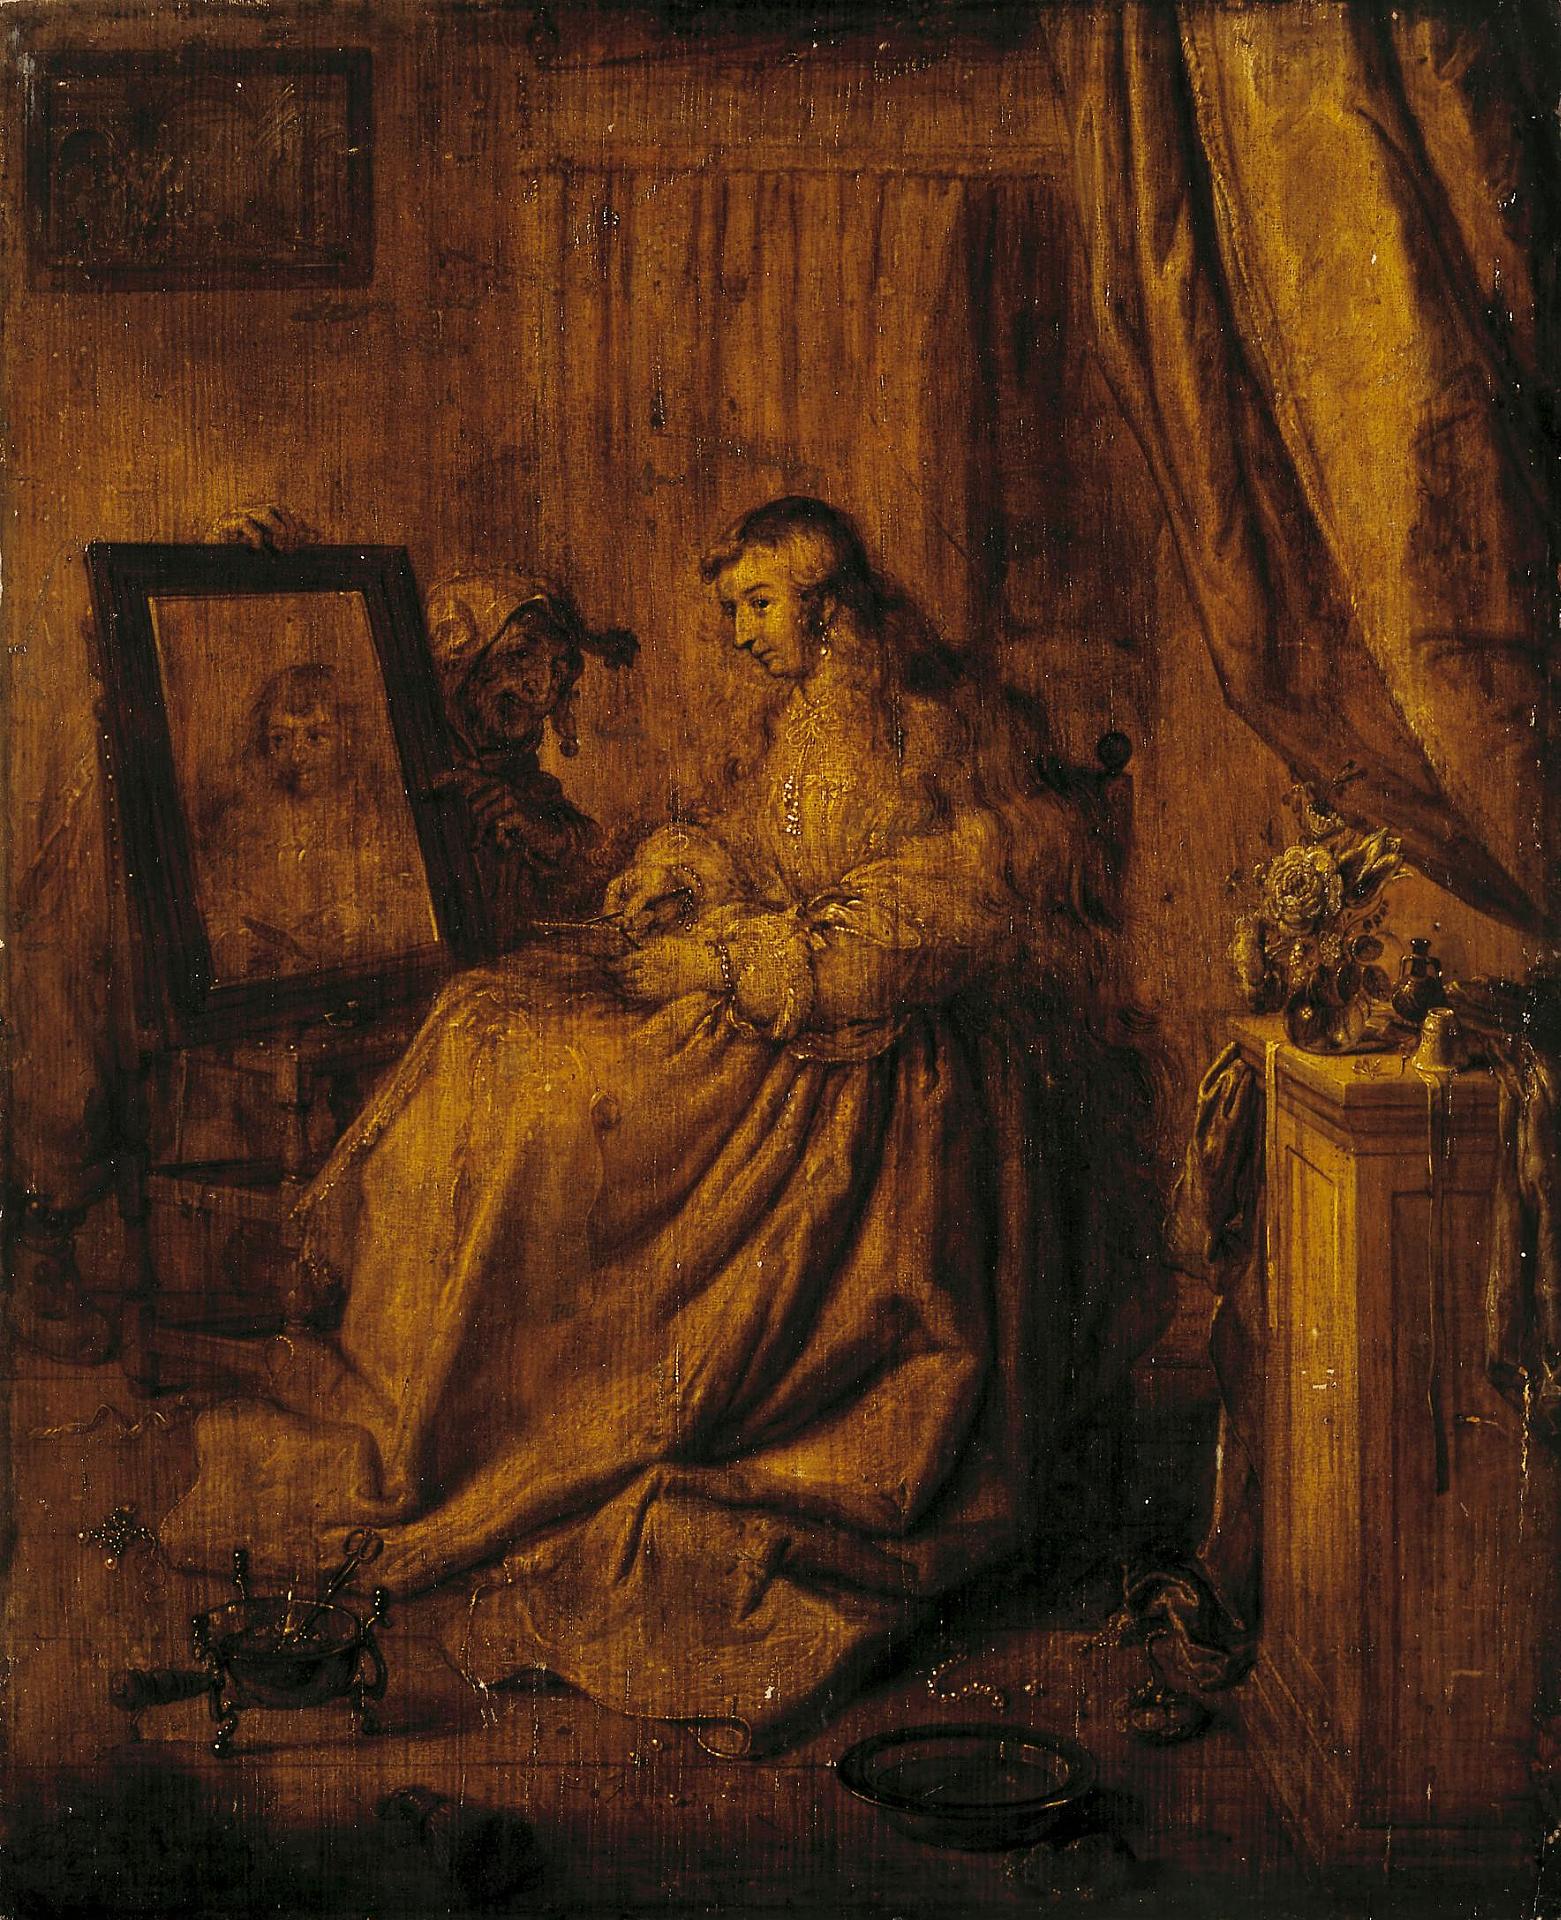 Адриан Питерс ван де Венне. "Молодая женщина перед зеркалом (Аллегория тщеславия)". Около 1630. Эрмитаж, Санкт-Петербург.